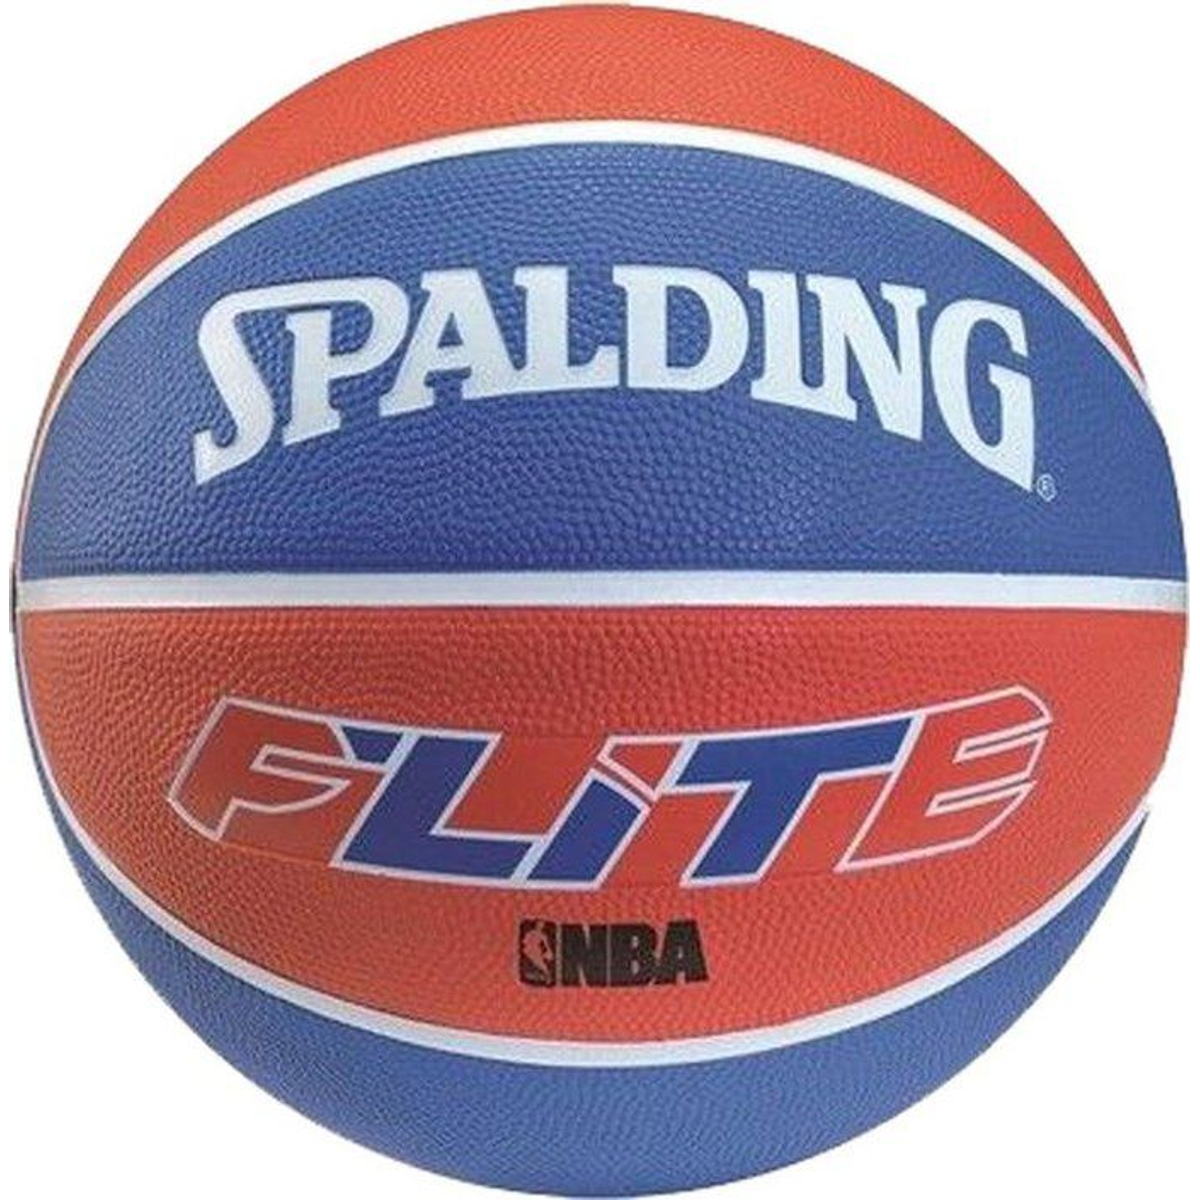 Spalding Flite Color Basketbal